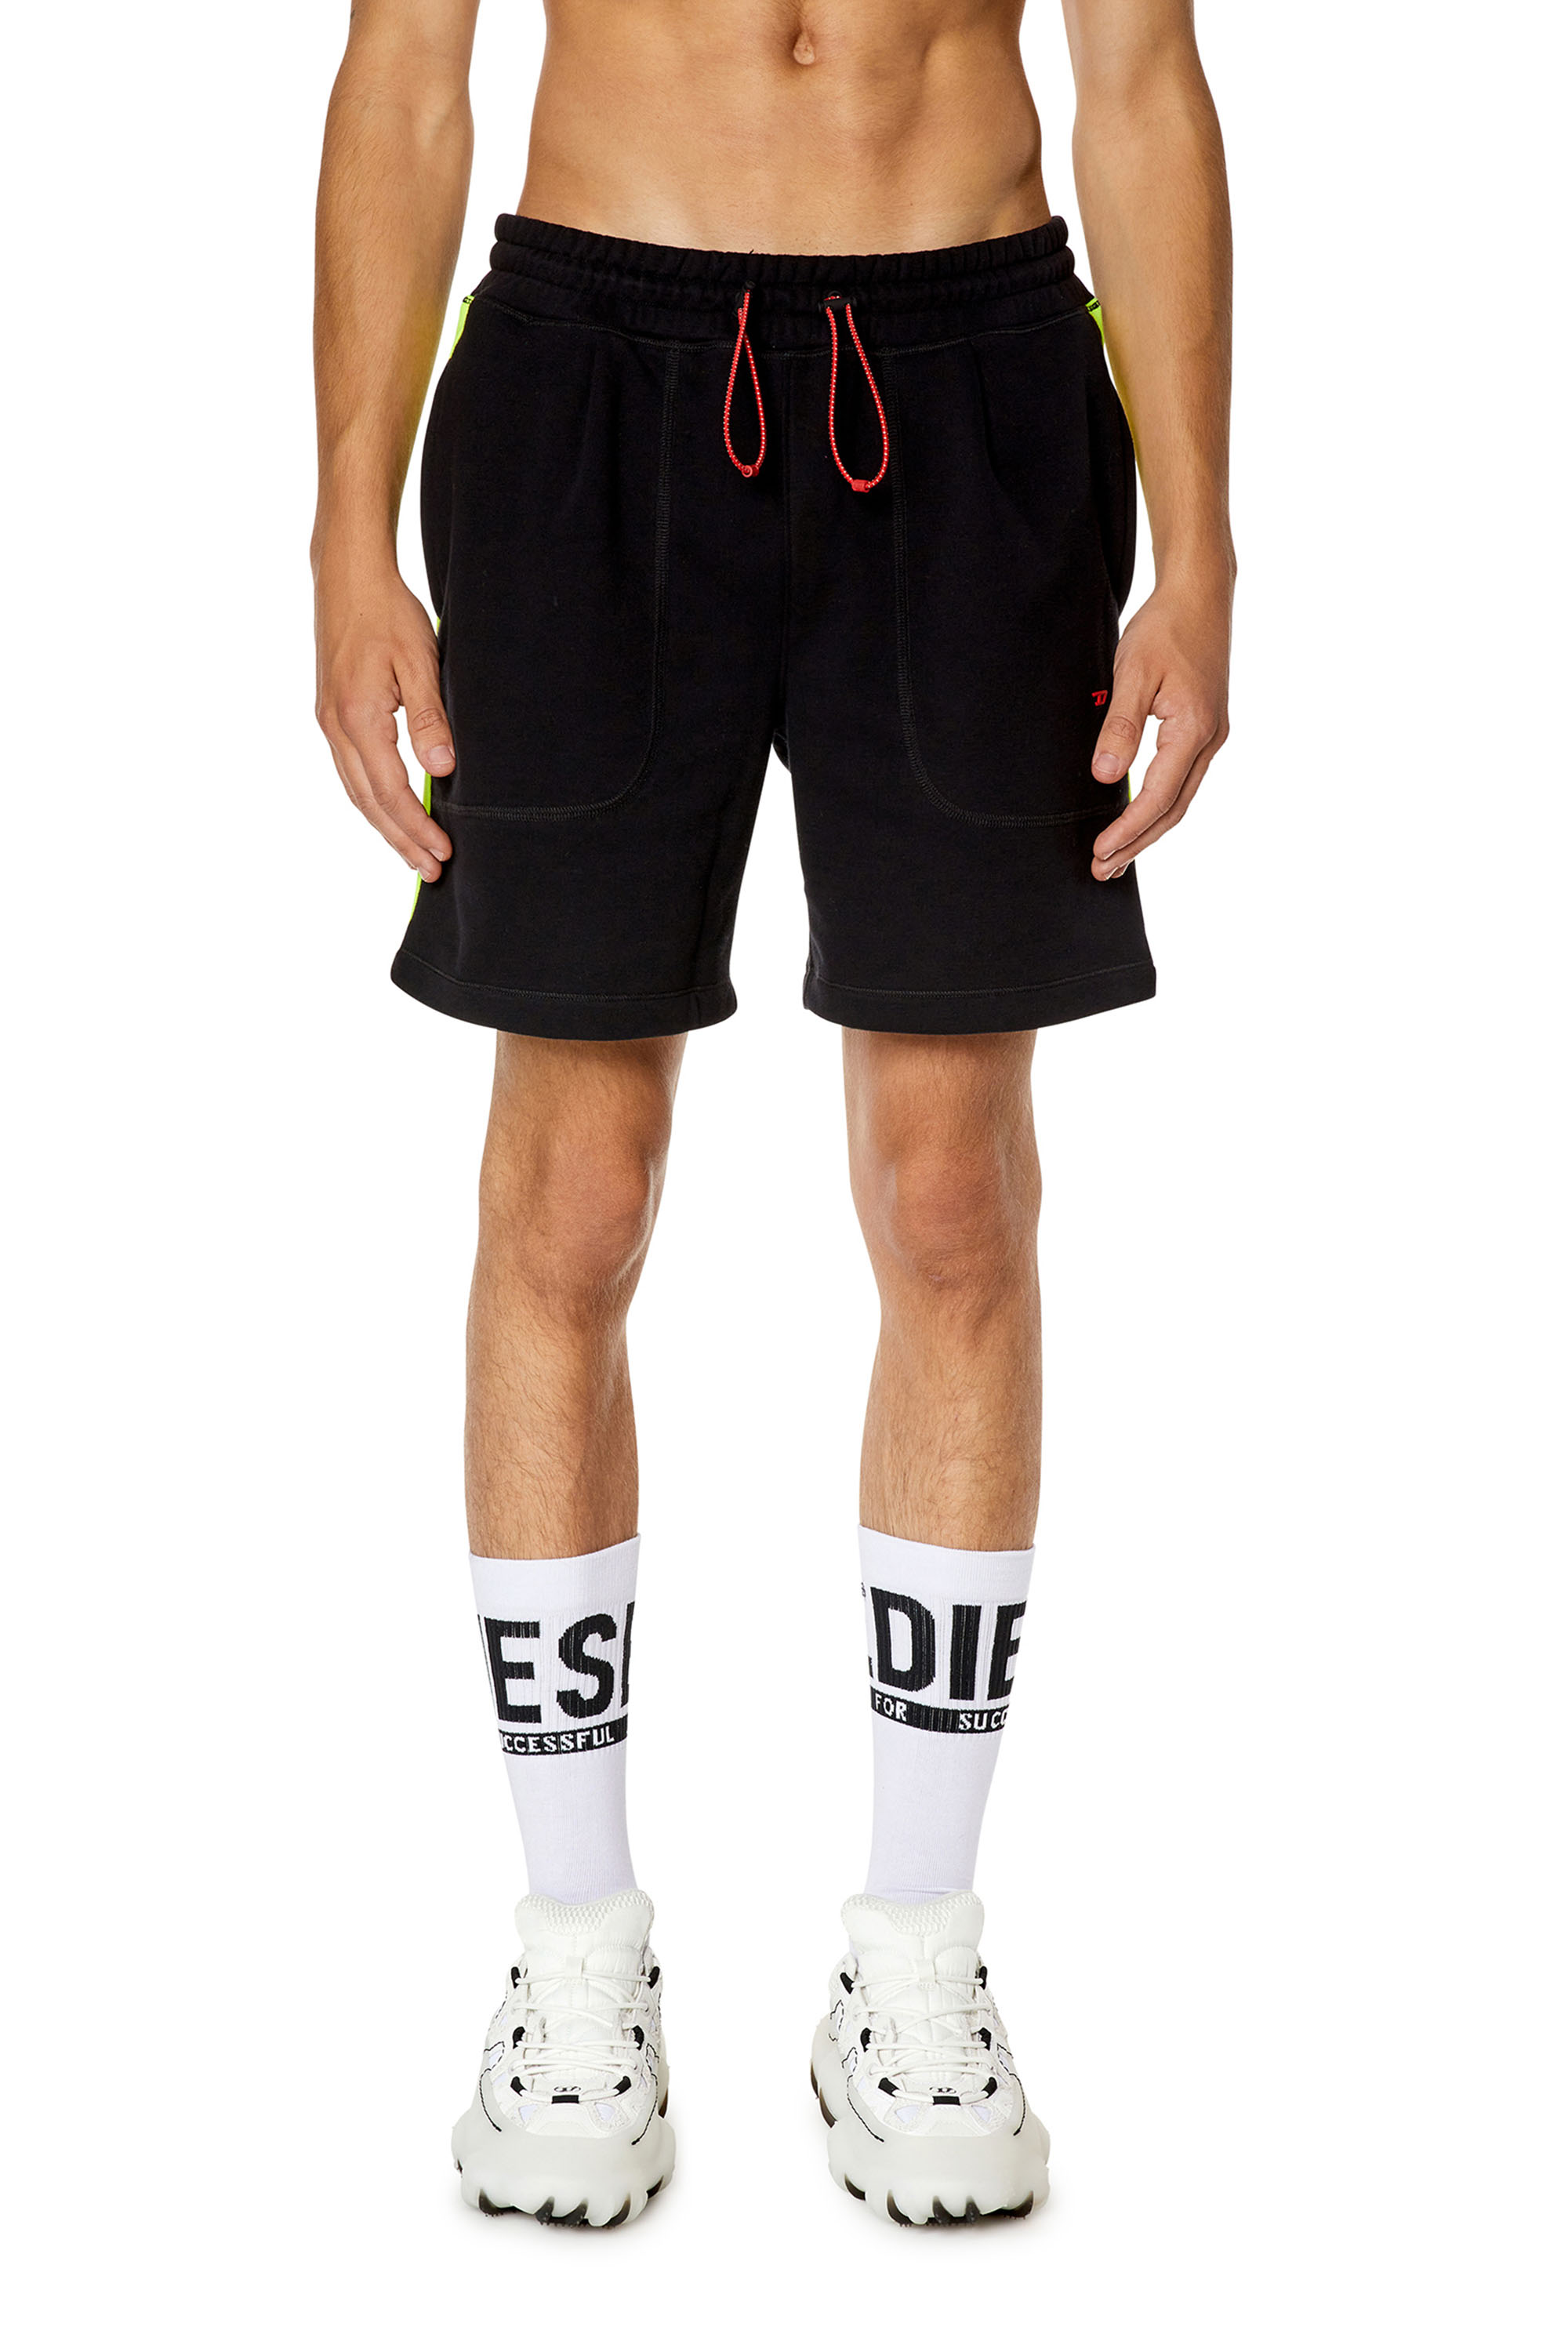 Diesel - Pantalones cortos deportivos con bandas reflectantes con el logotipo - Shorts - Hombre - Multicolor